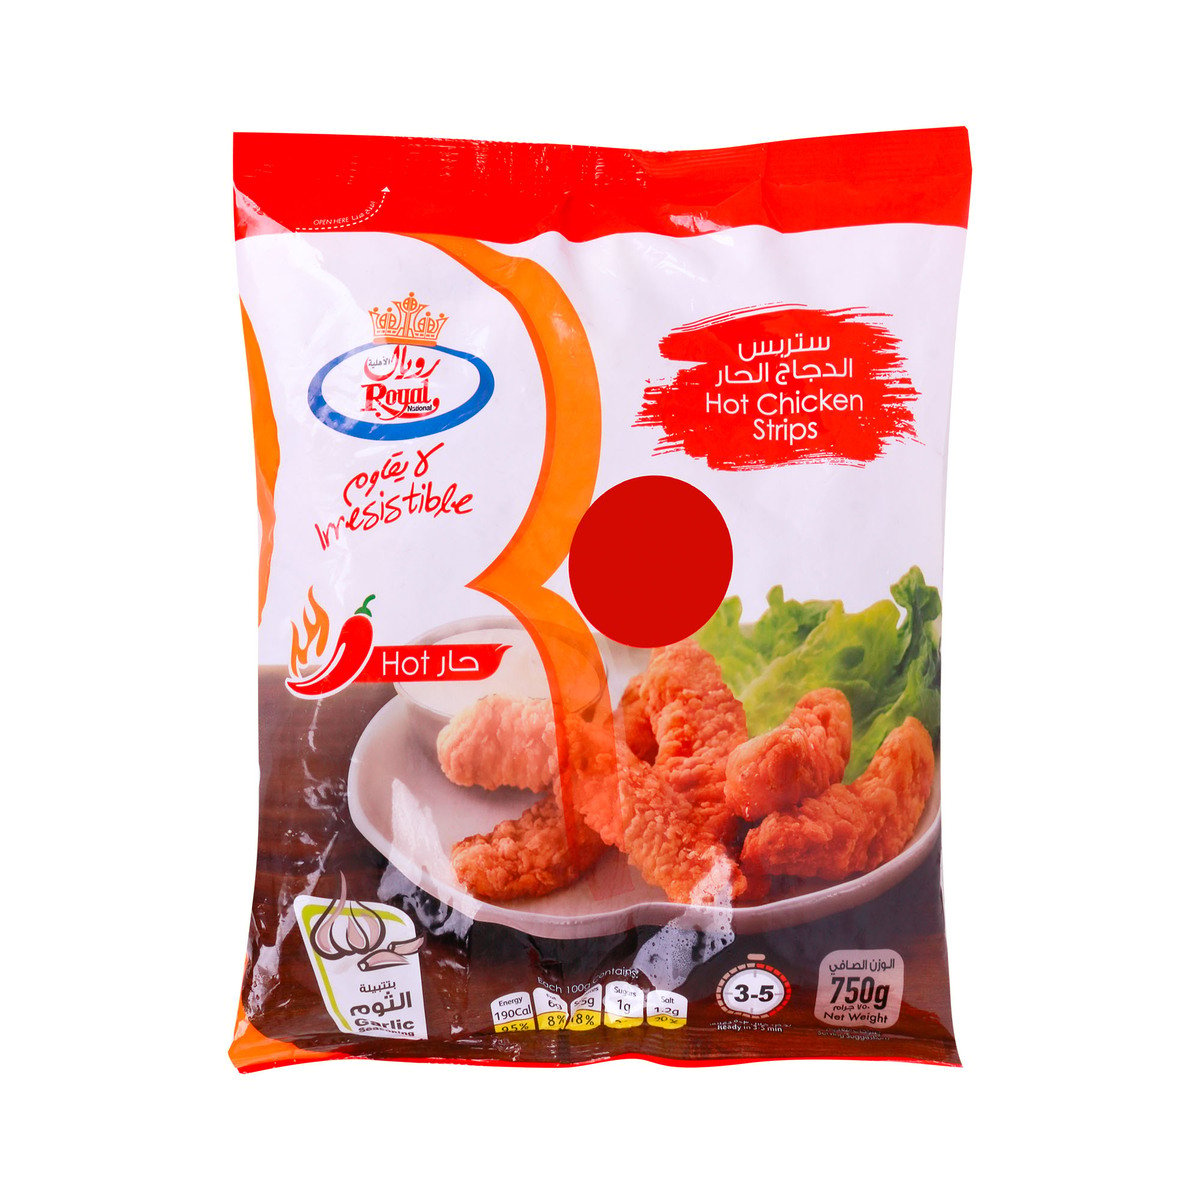 Buy Royal Hot Chicken Strips 750g Online at Best Price | Zingers | Lulu KSA in Saudi Arabia